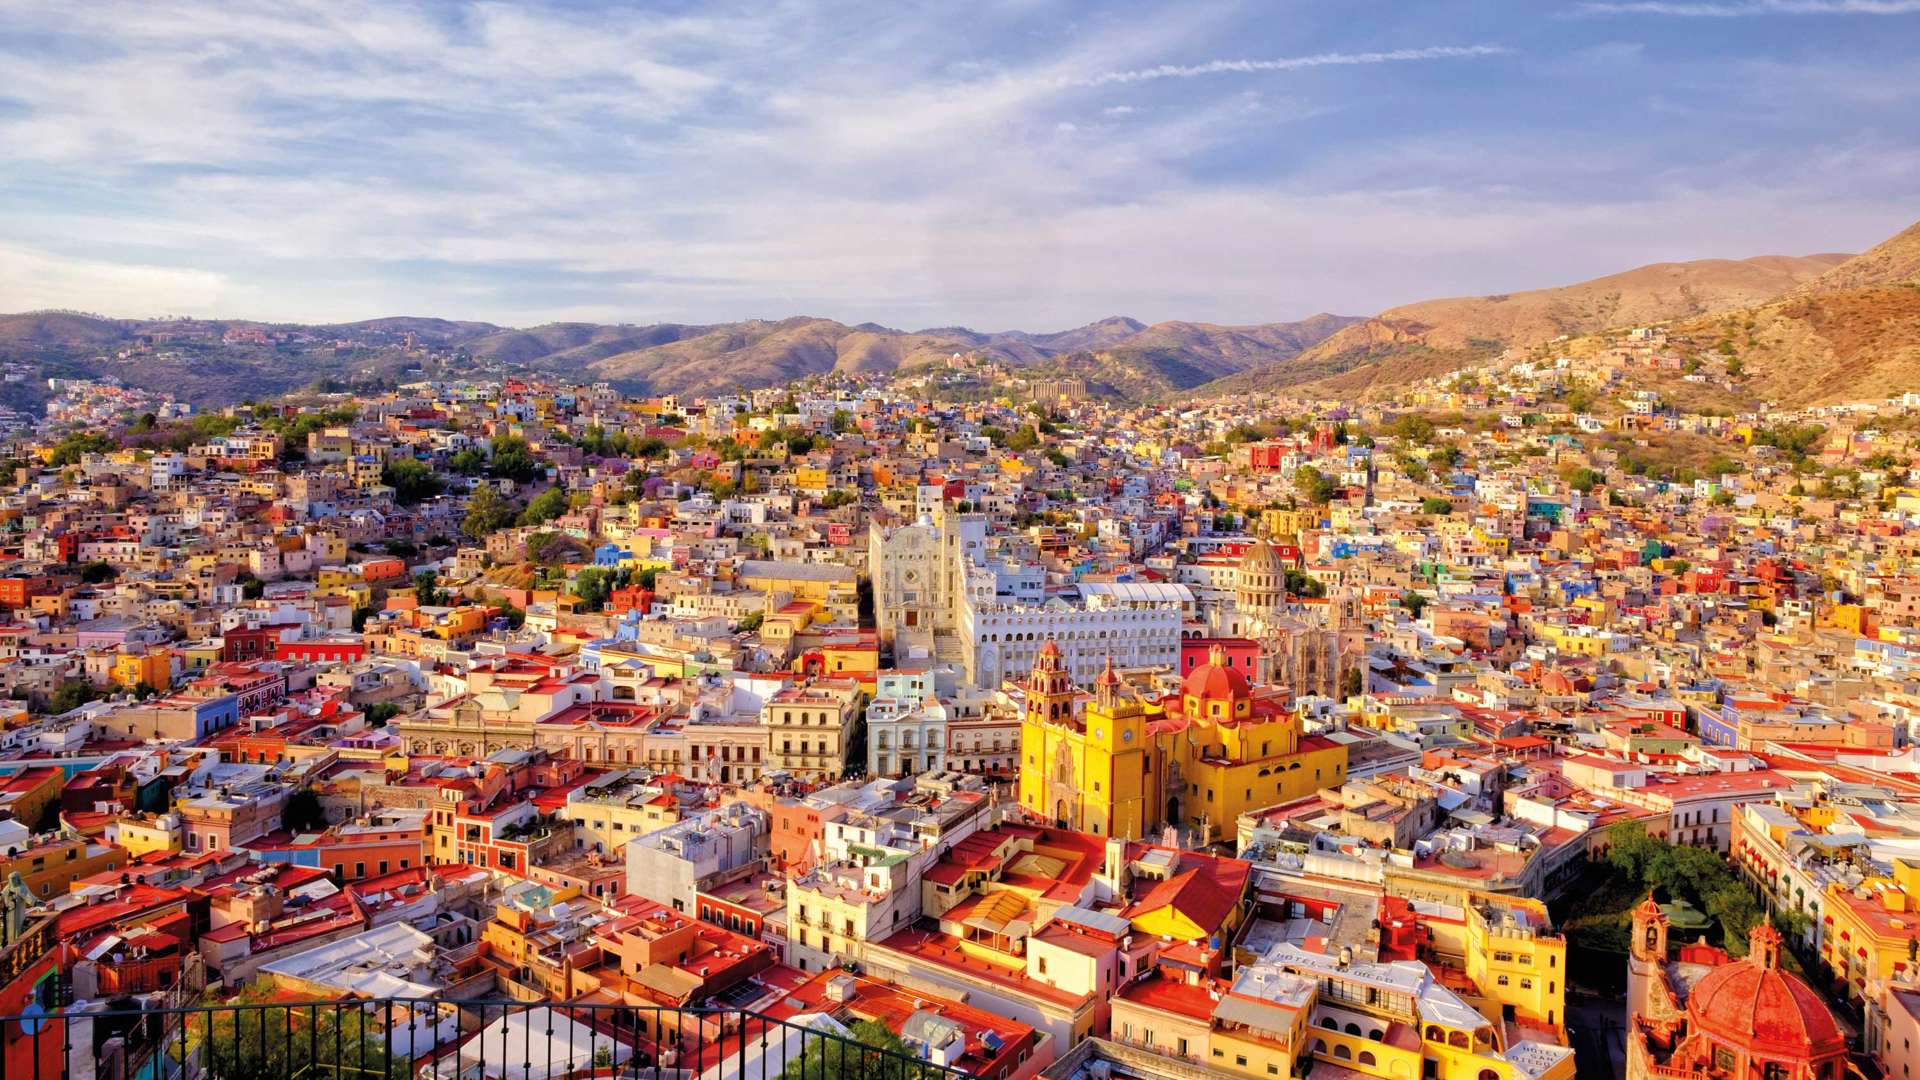 City of Guanajuato, Mexico 